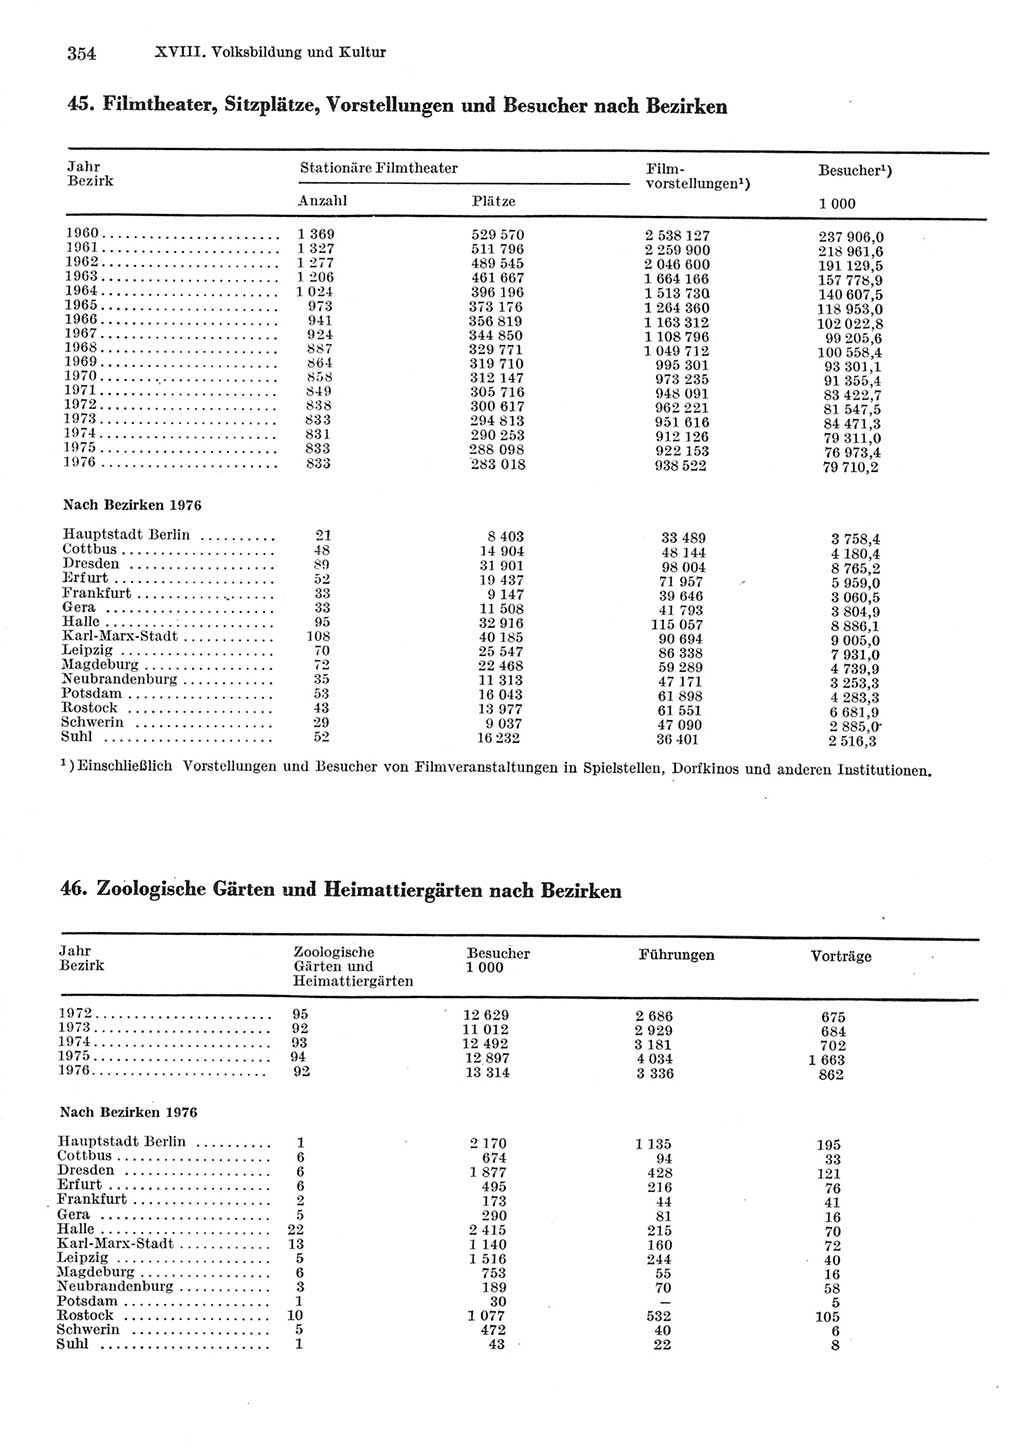 Statistisches Jahrbuch der Deutschen Demokratischen Republik (DDR) 1977, Seite 354 (Stat. Jb. DDR 1977, S. 354)